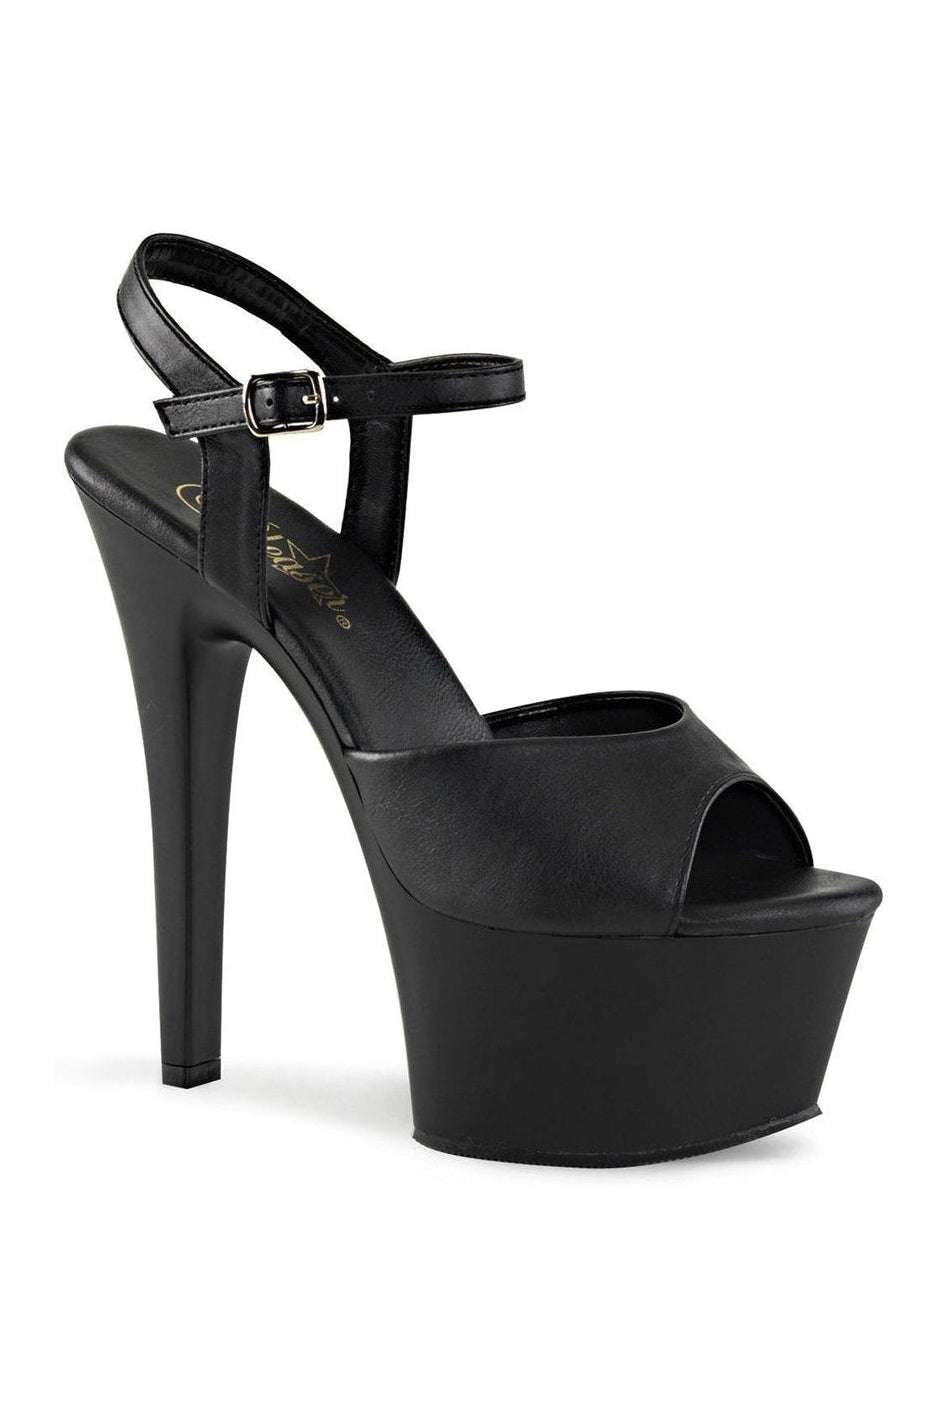 ASPIRE-609 Platform Sandal | Black Faux Leather-Pleaser-Black-Sandals-SEXYSHOES.COM